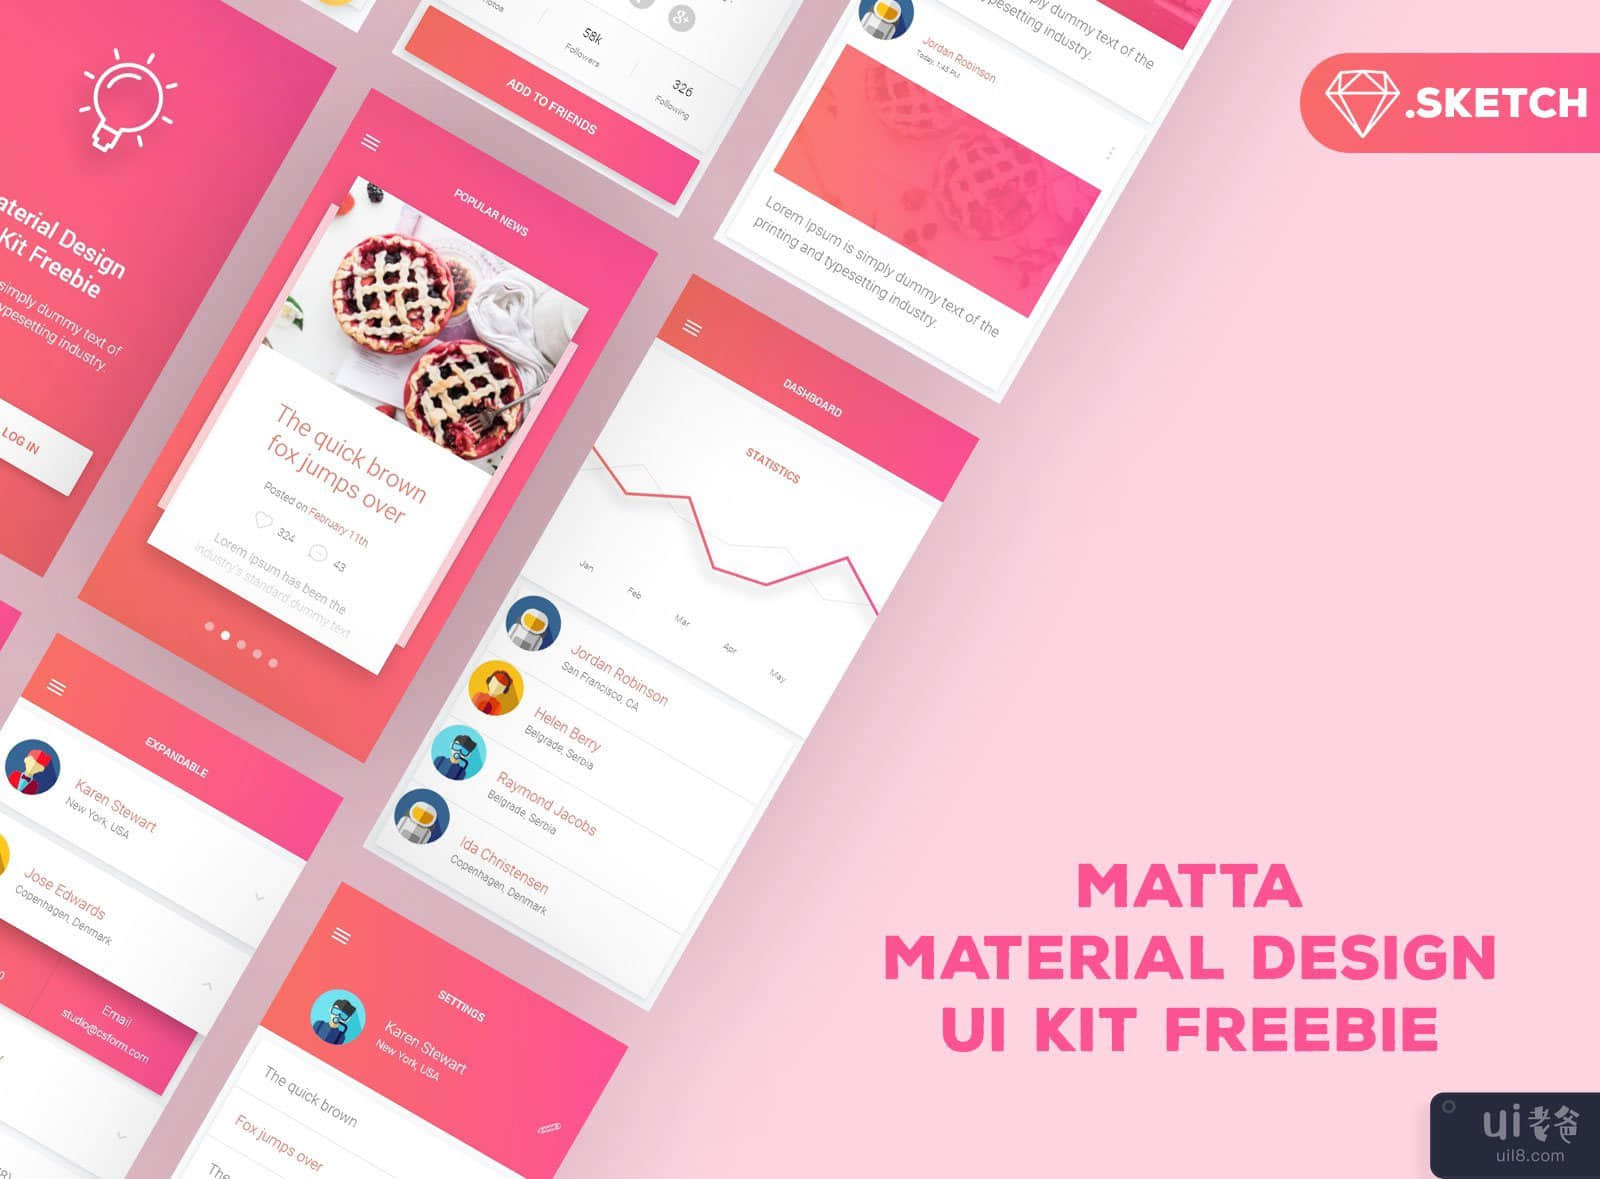 Matta 材料设计 UI 套件(Matta Material Design UI Kit)插图